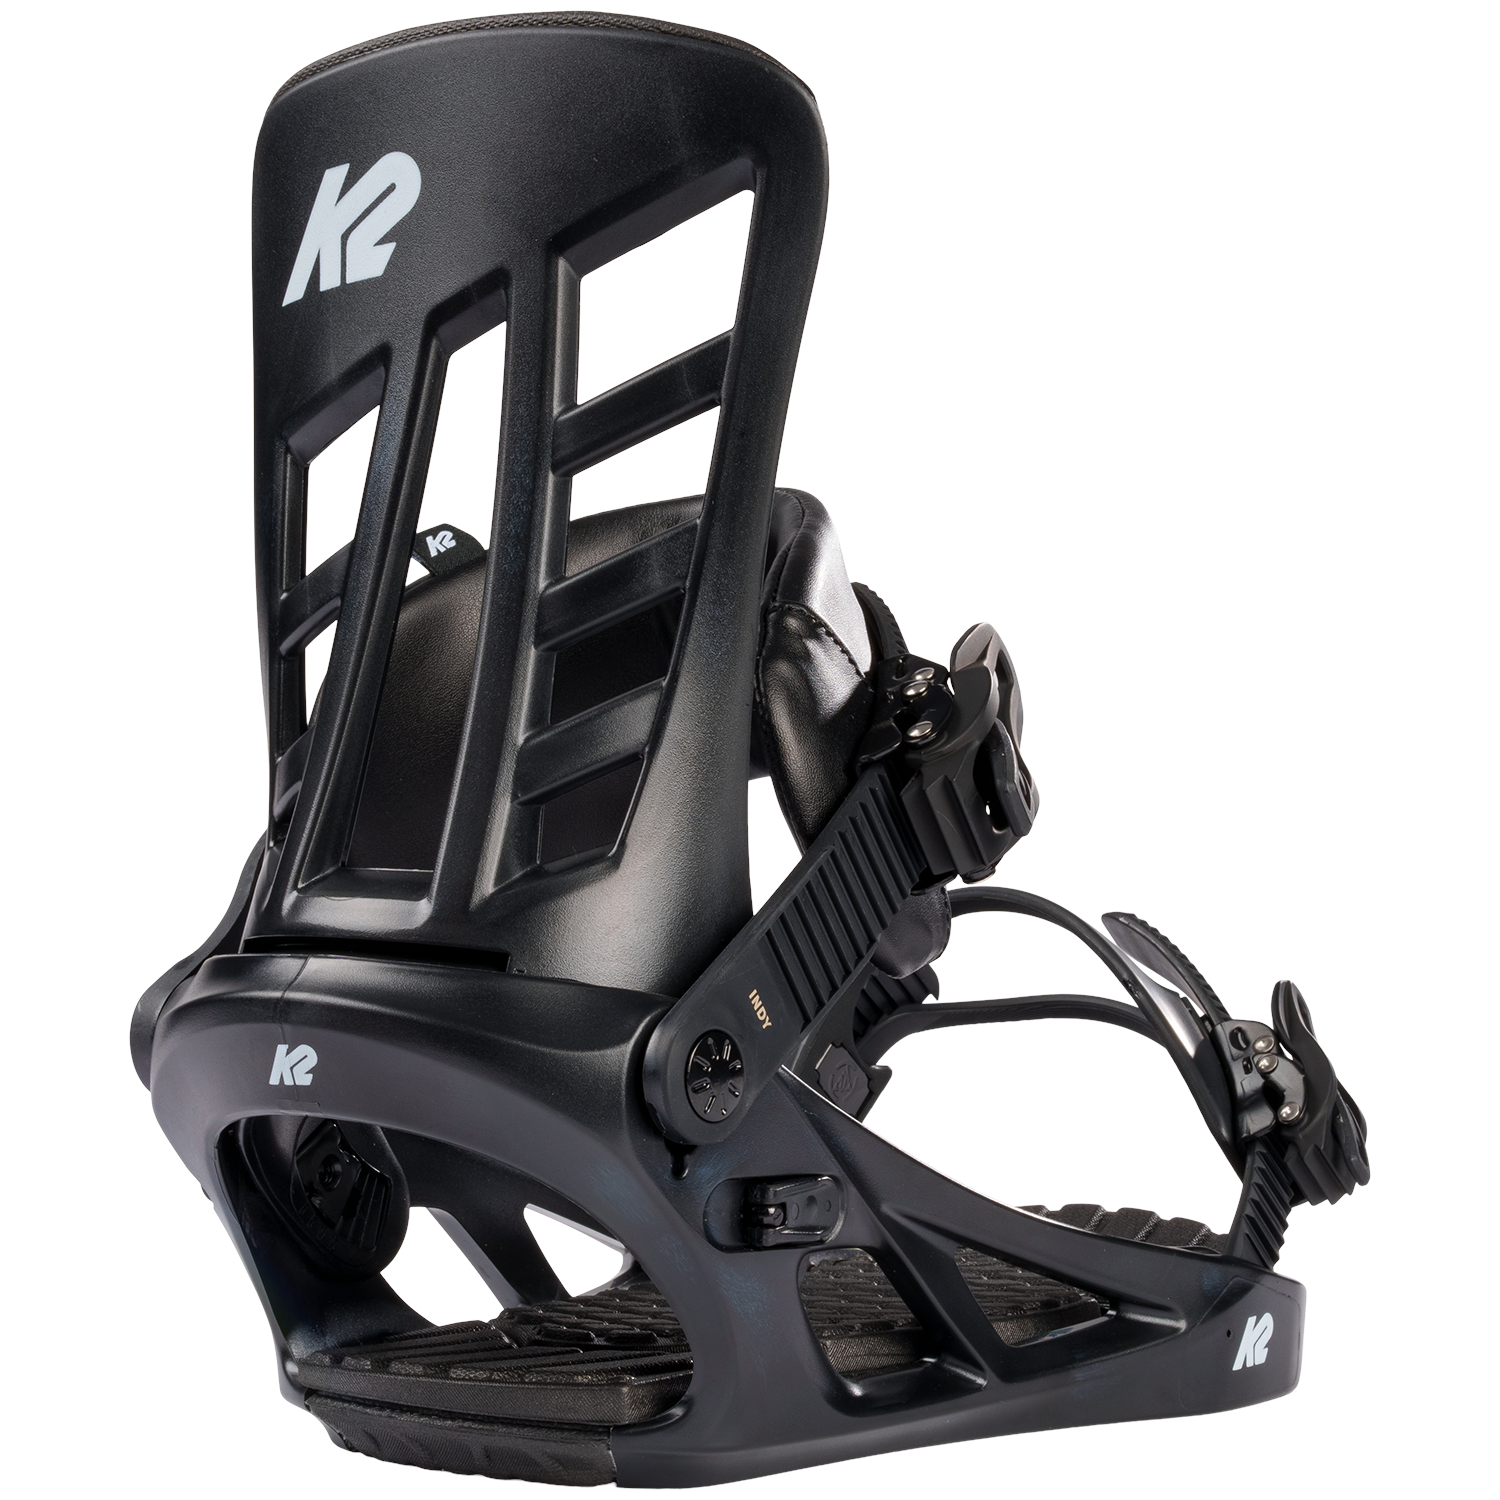 Ankle Ladder Straps & Mounting Hardware Black K2 Snowboard Bindings 